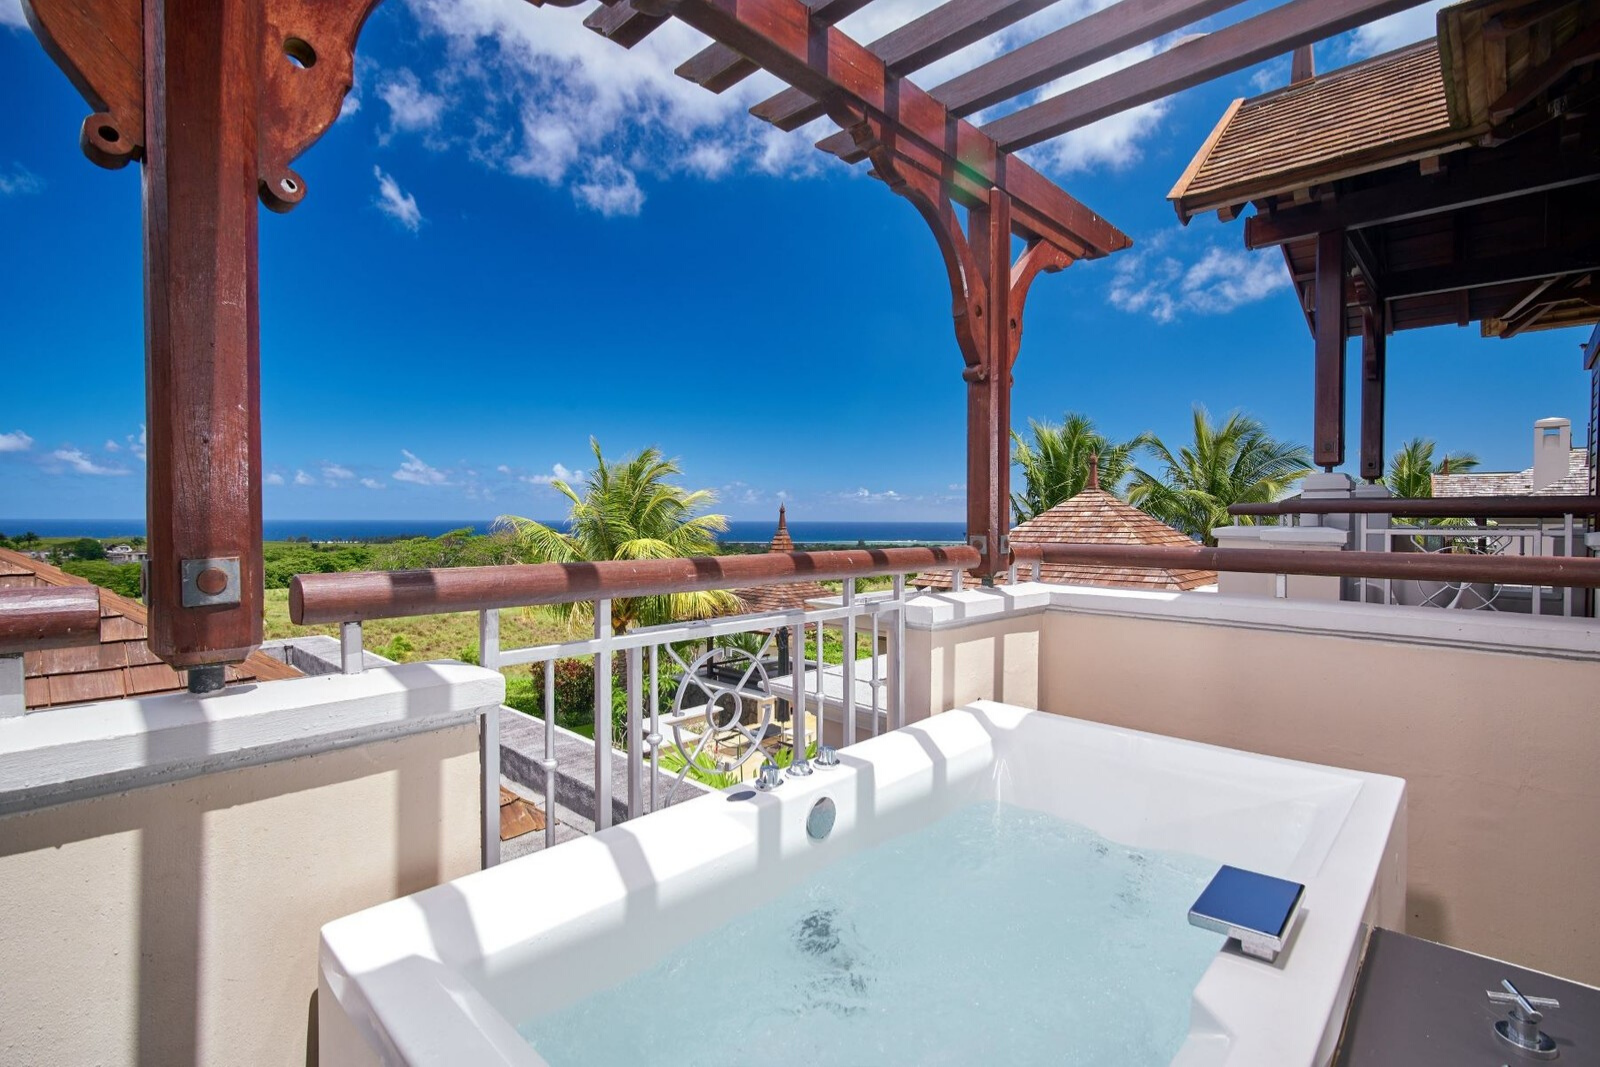 Somptueuse villa de 4 chambres offre un style de vie inégalé - île Maurice